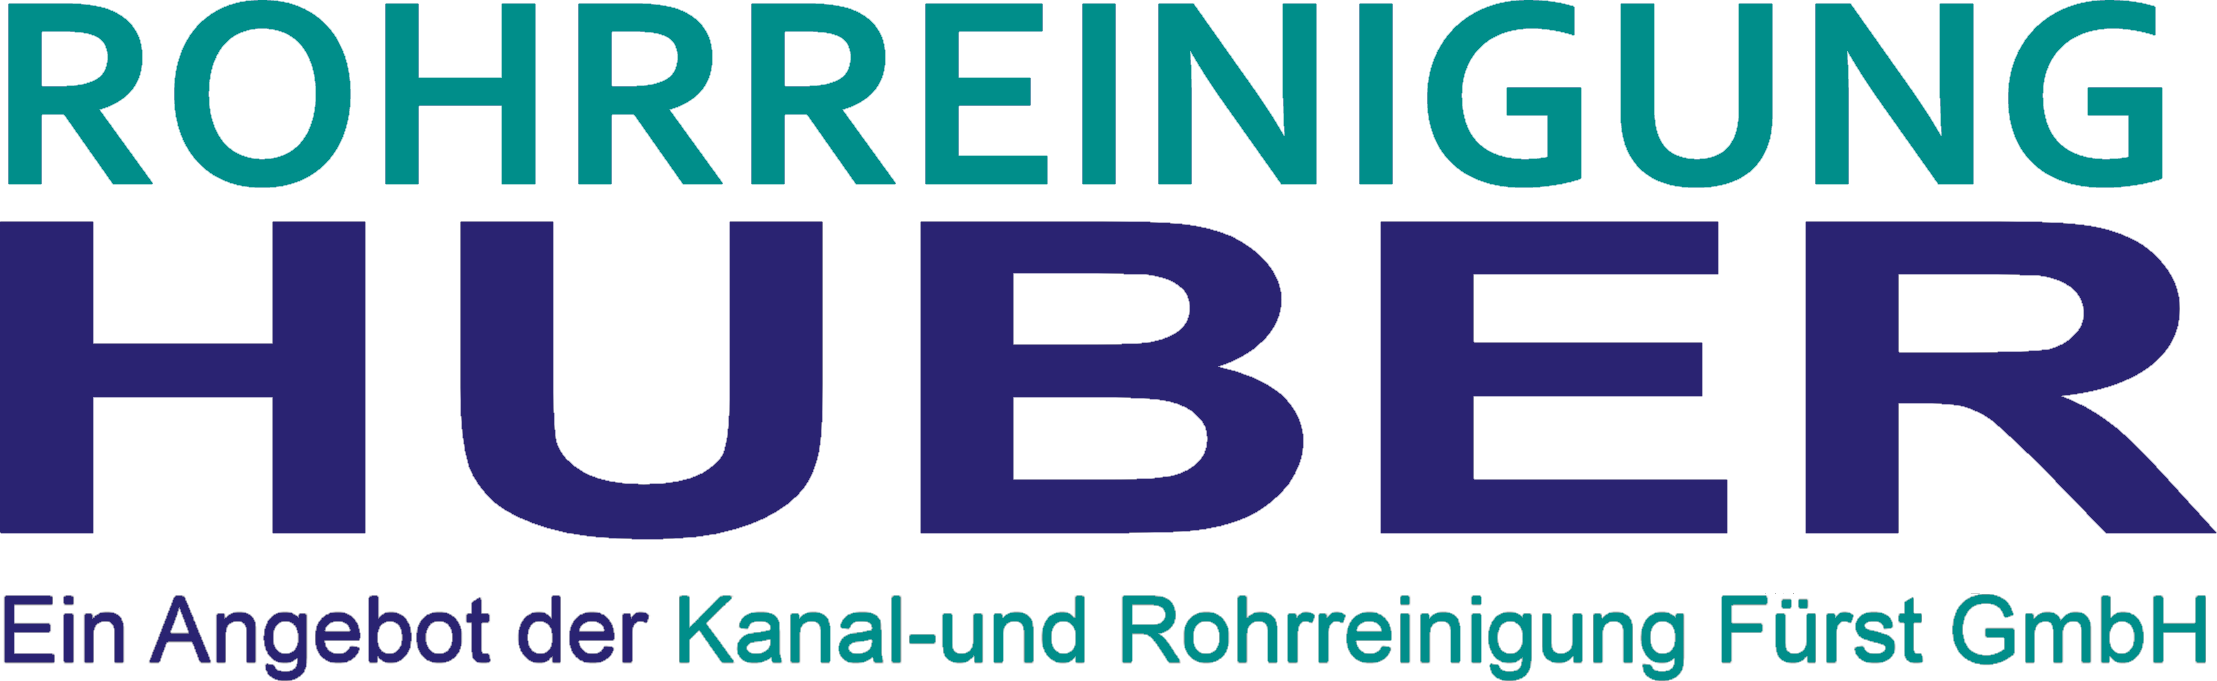 Rohrreinigung Huber - Rohrreinigung für Börrstadt